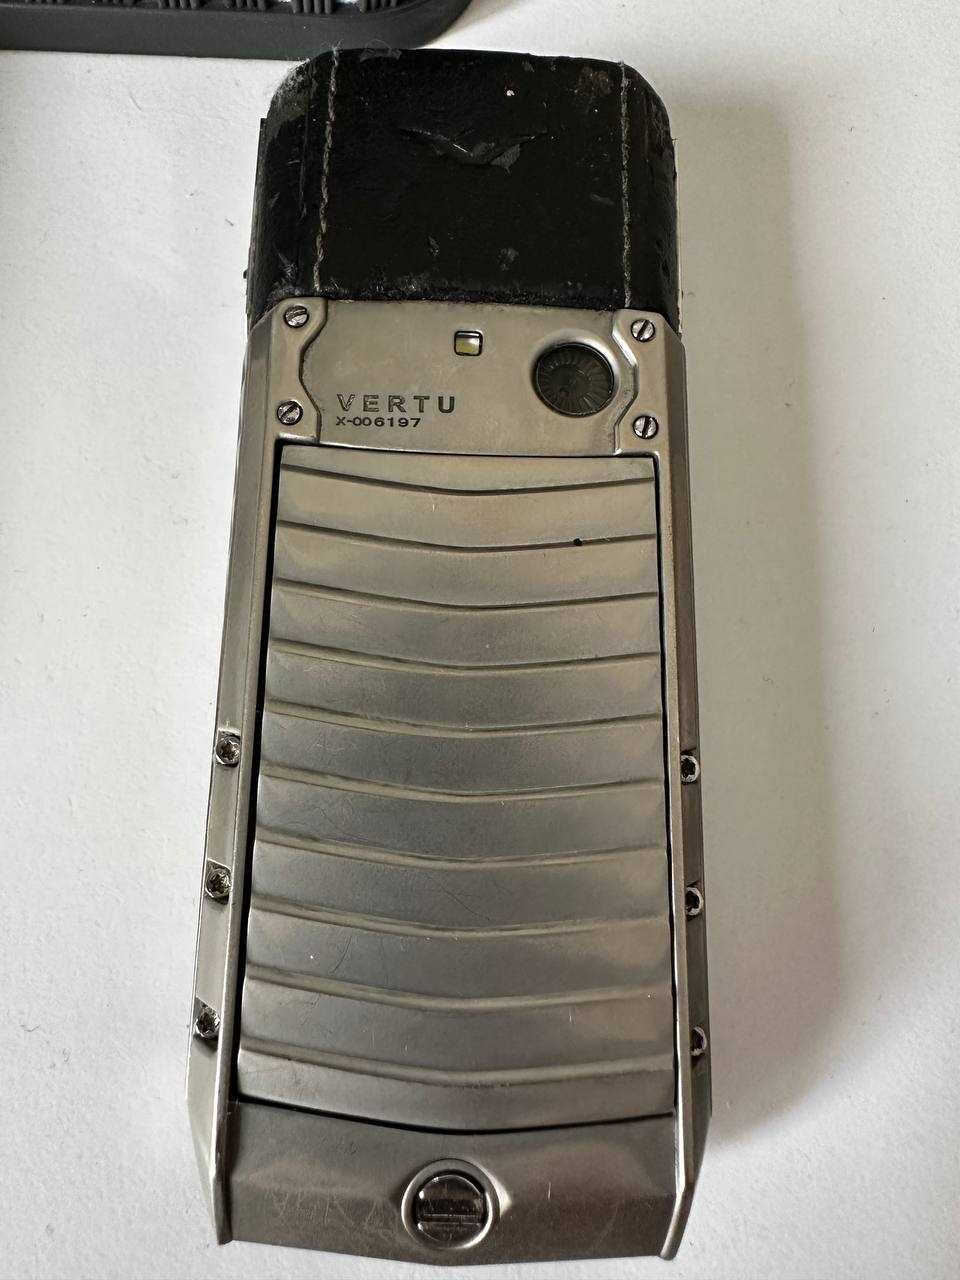 Мобільний телефон Vertu X006197